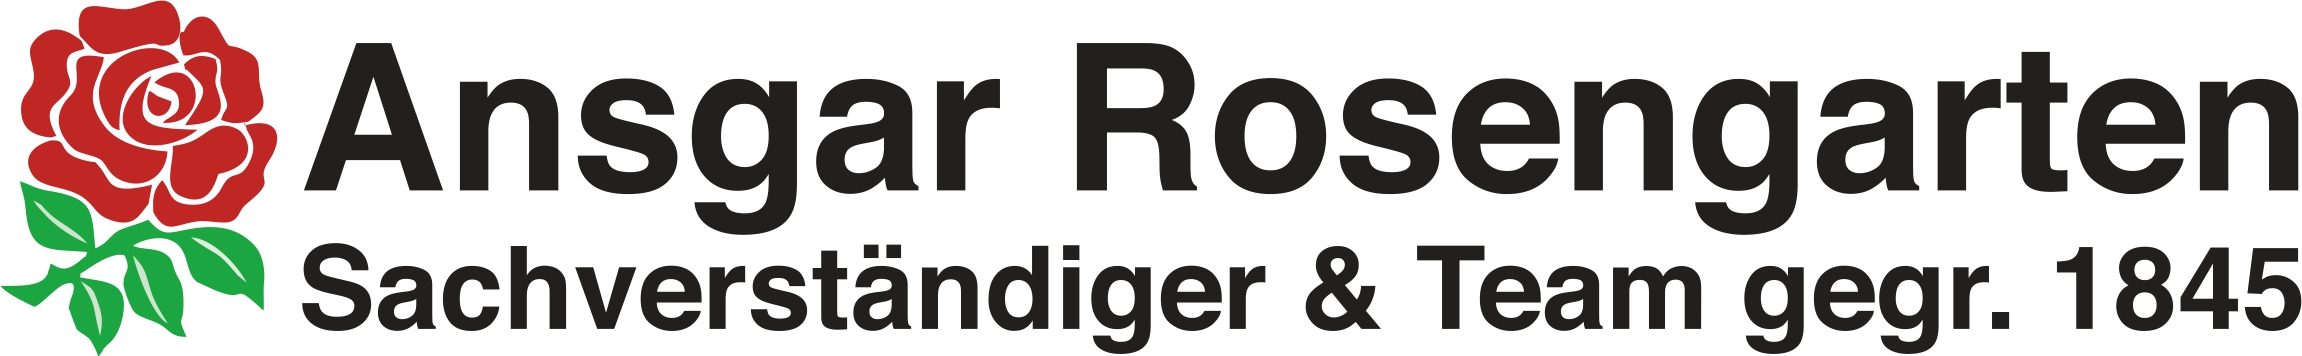 Ansgar Rosengarten Sachverständigen- und Bauplanungsbüro